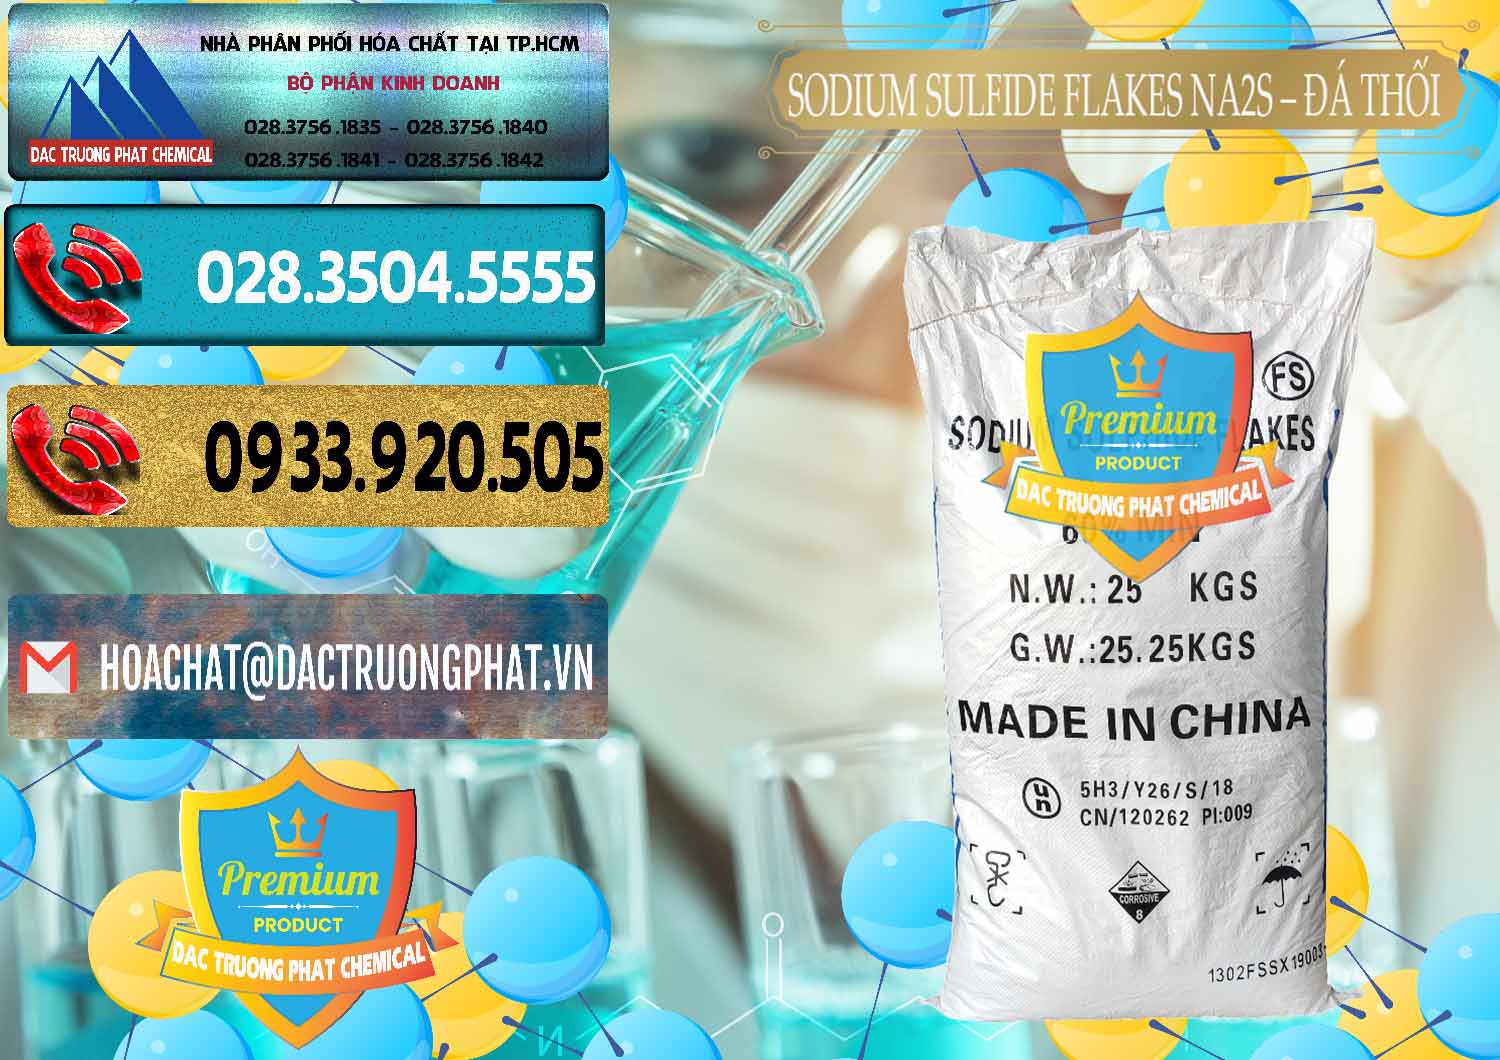 Cty chuyên cung ứng & bán Sodium Sulfide Flakes NA2S – Đá Thối Đỏ Trung Quốc China - 0150 - Nơi chuyên phân phối _ kinh doanh hóa chất tại TP.HCM - hoachatdetnhuom.com